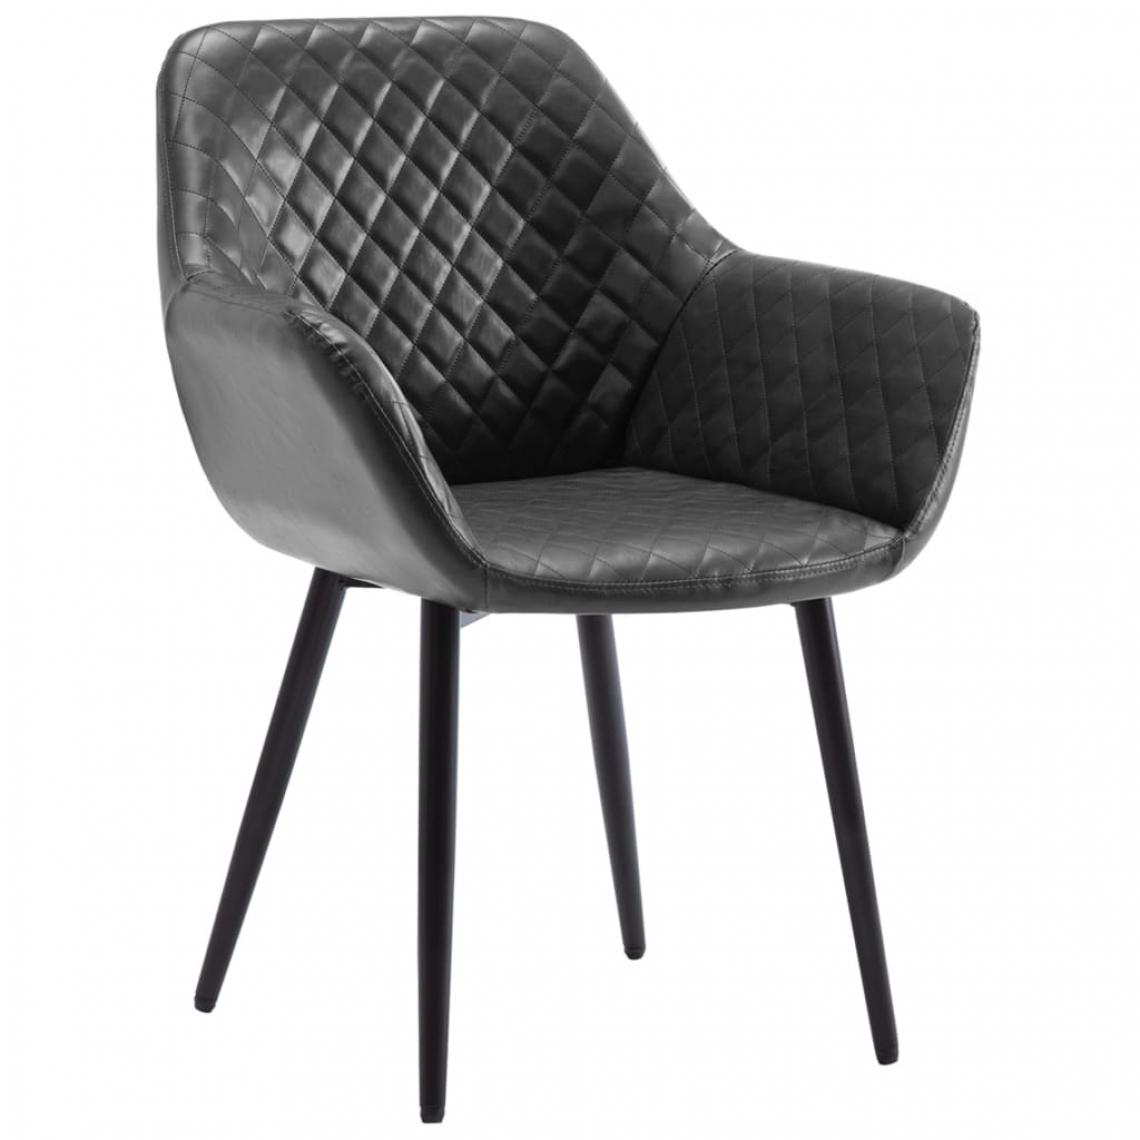 Decoshop26 - Chaise de salle à manger design moderne pieds métal noir similicuir gris CDS020043 - Chaises